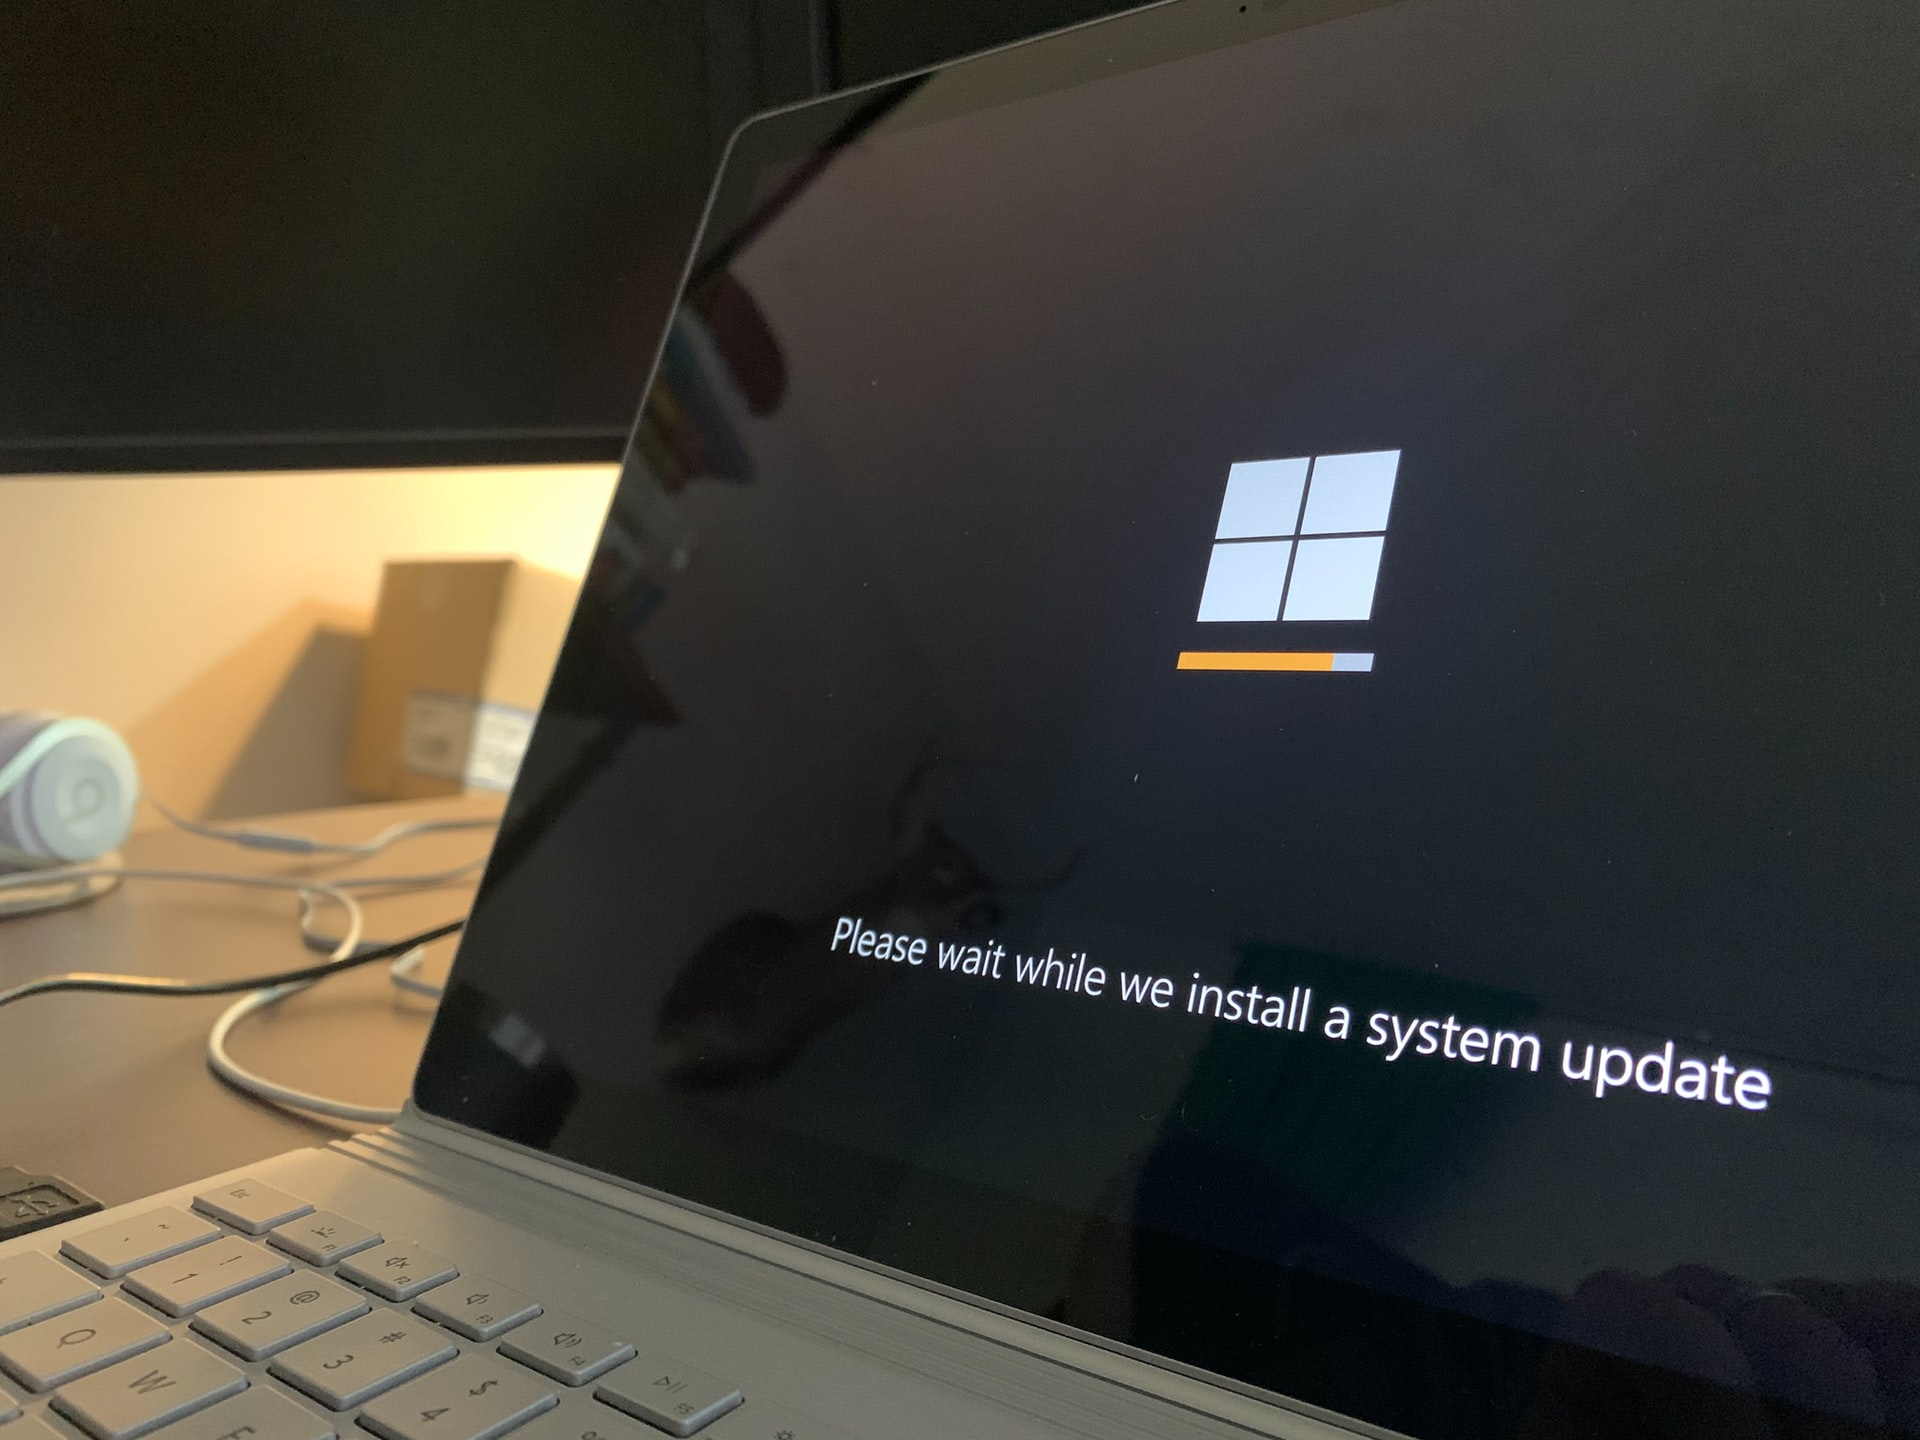 Не Windows 11 єдиною: Microsoft випустила оновлення Windows 10 21H1 для всіх користувачів